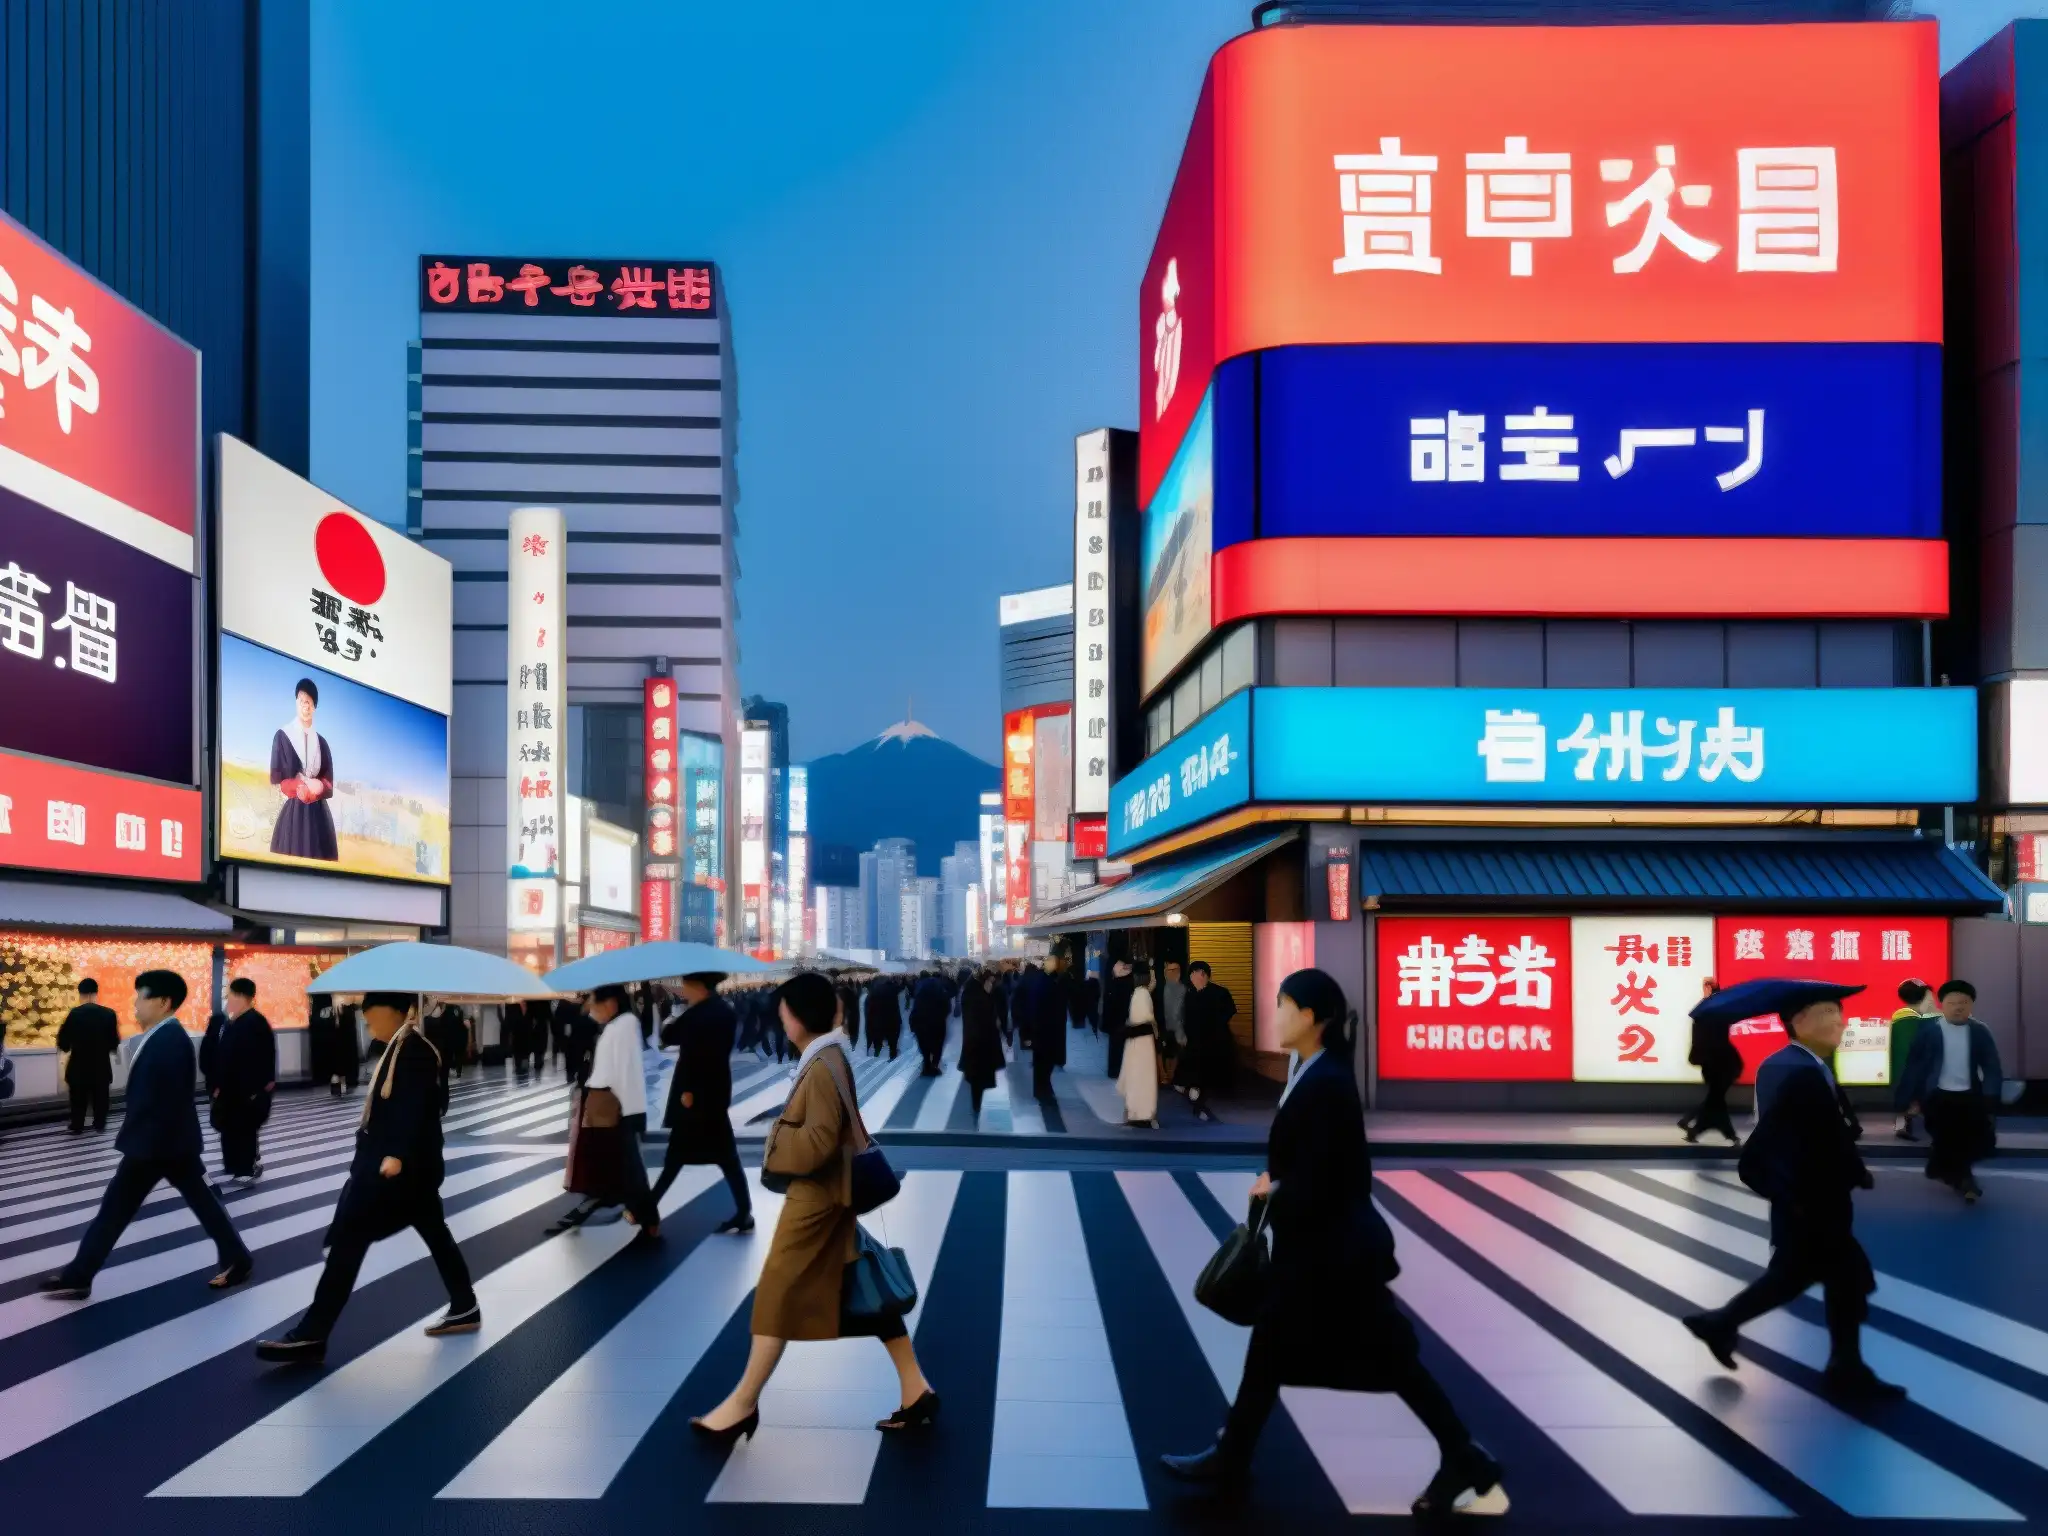 Vista urbana en Japón con preservación de leyendas urbanas japonesas digitales: arquitectura tradicional, neones y multitud